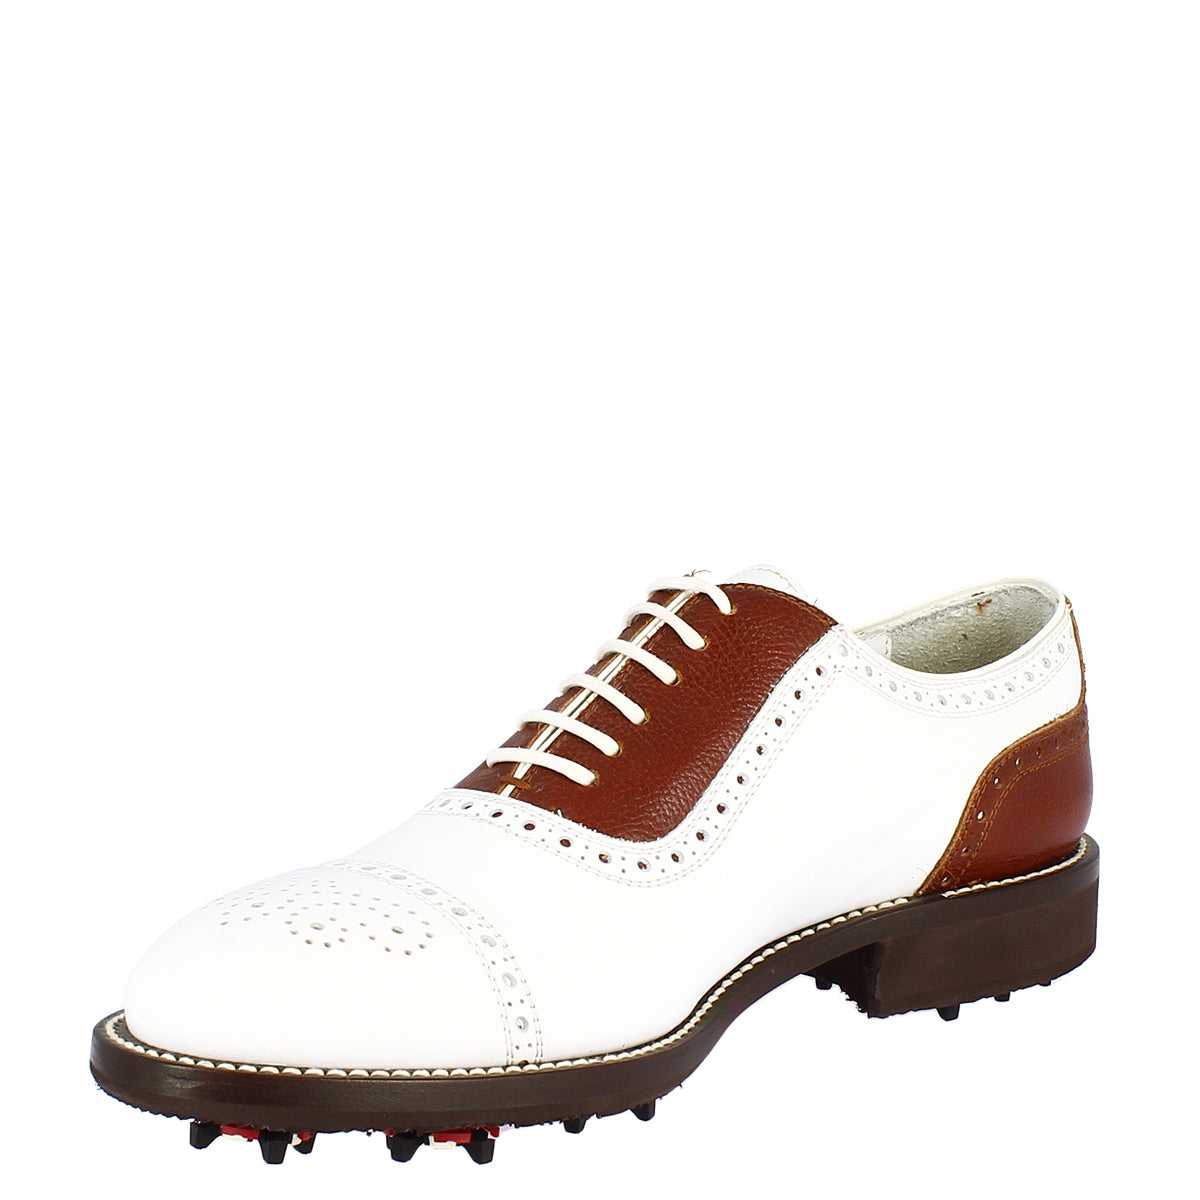 Handgefertigte klassische Herren-Golfschuhe aus weißem Leder in Braun